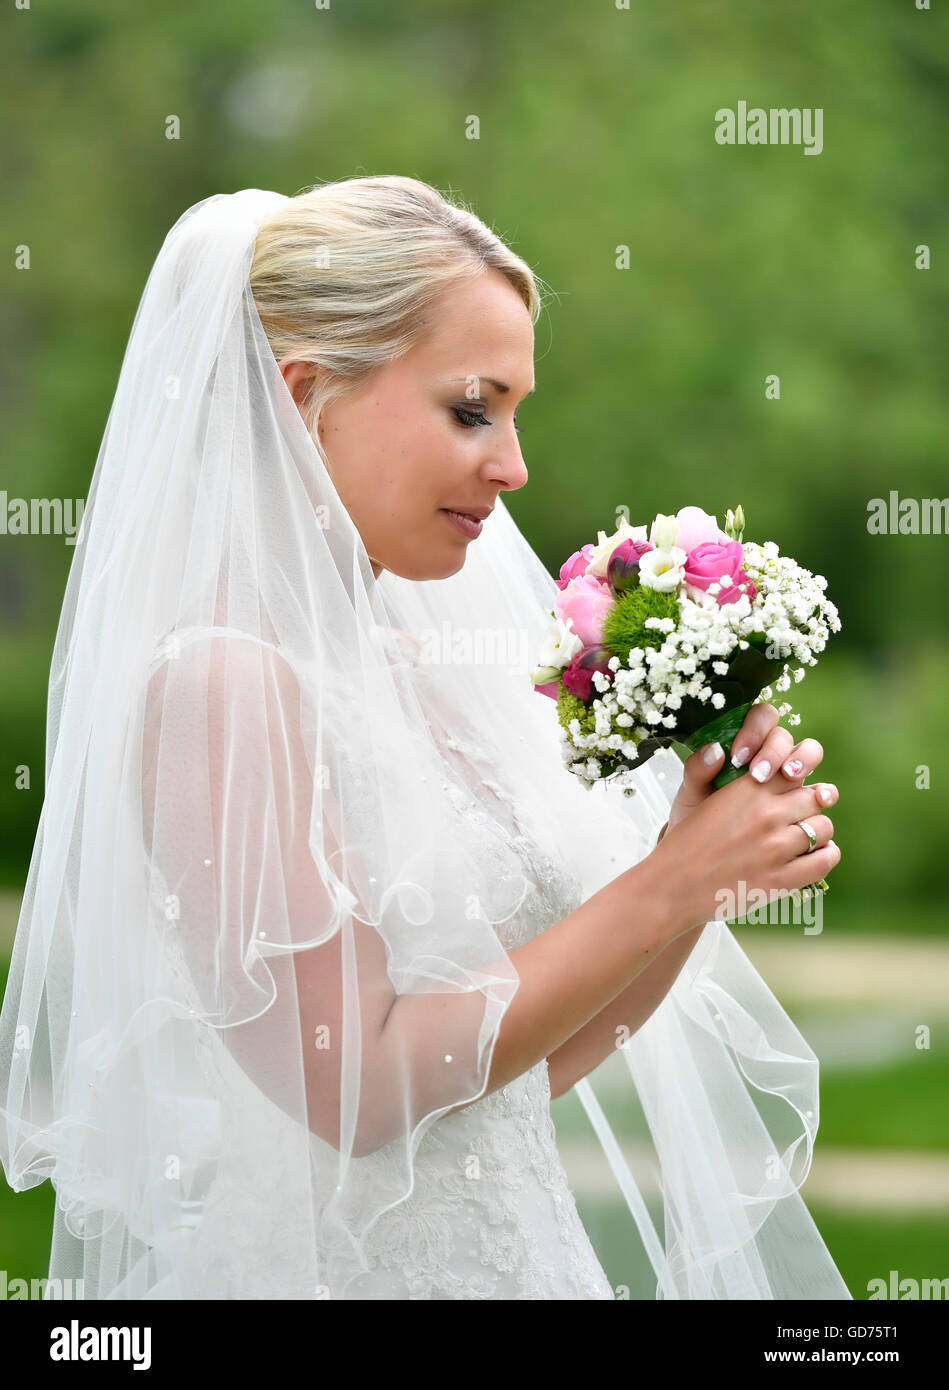 Braut im Brautkleid mit Schleier betrachtet man Braut Blumenstrauß, Deutschland Stockfoto